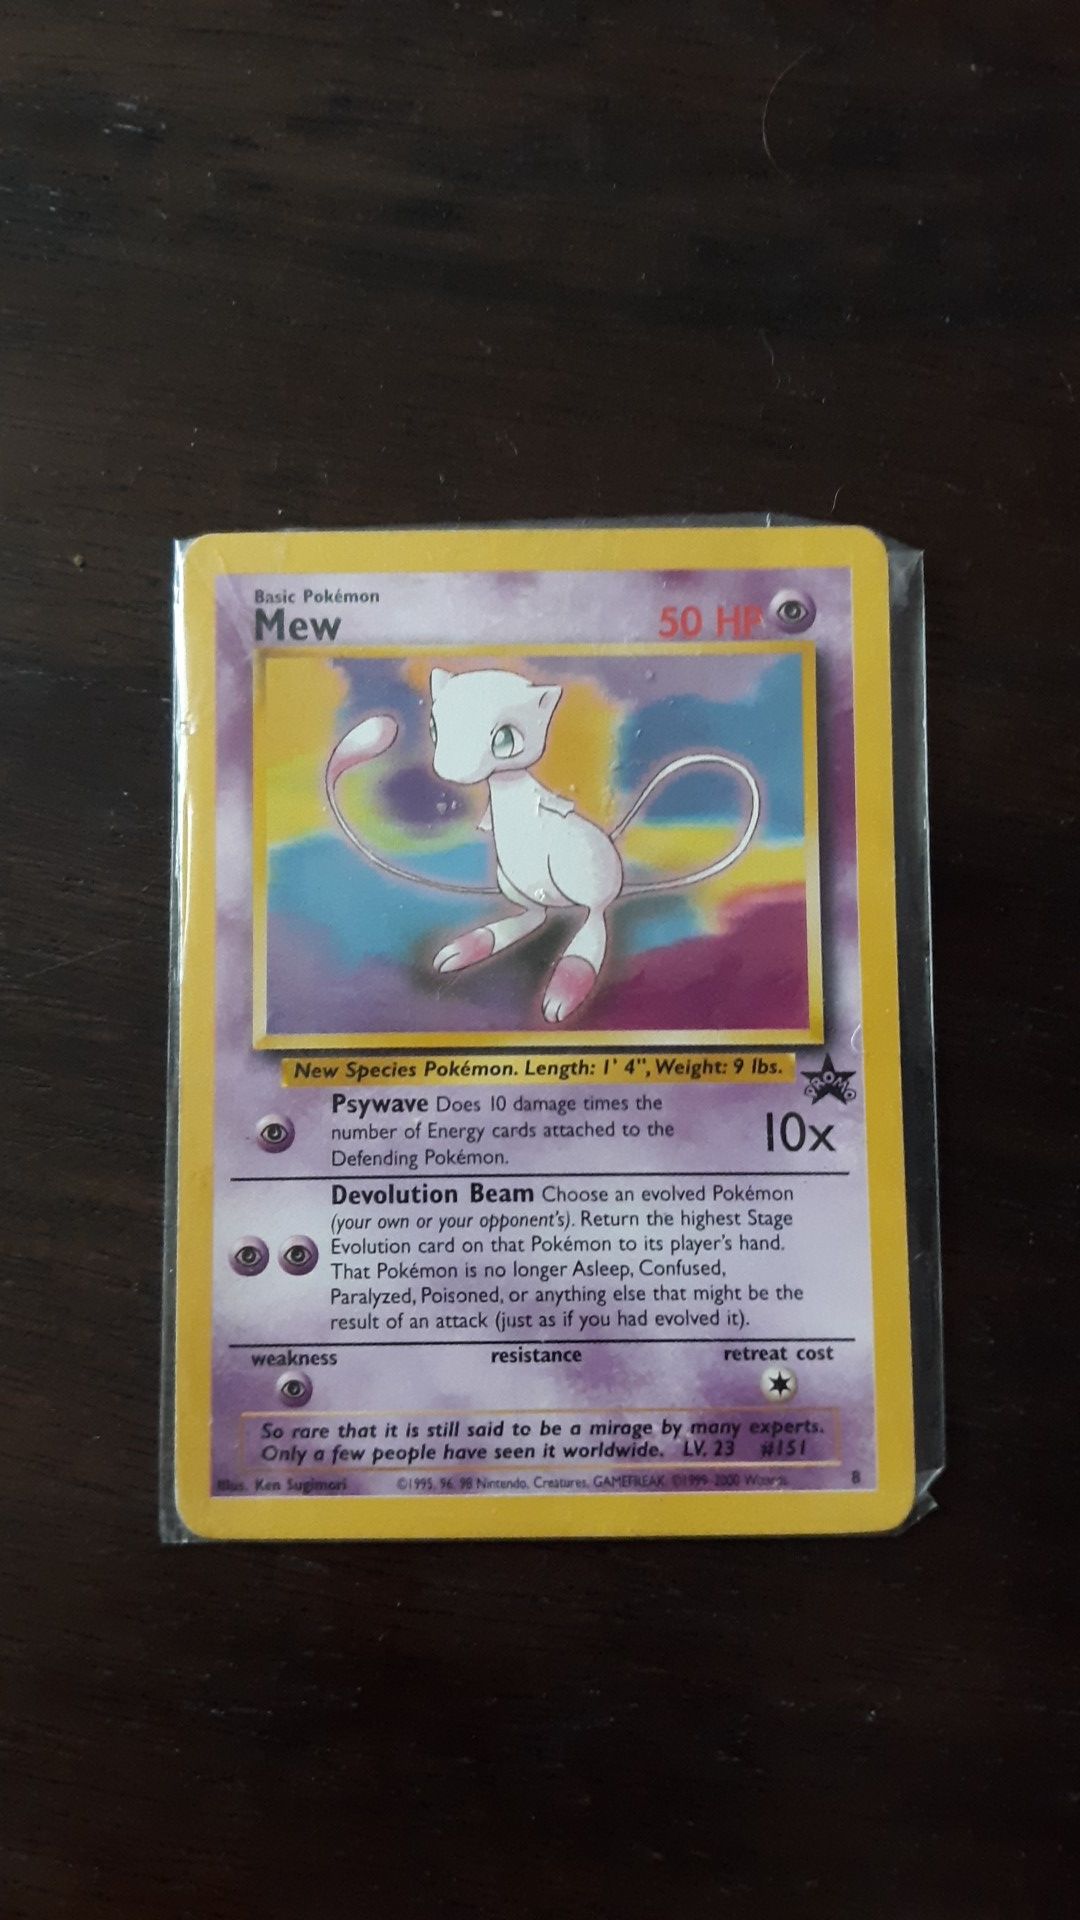 Rare Pokemon 1995 Mew promo card